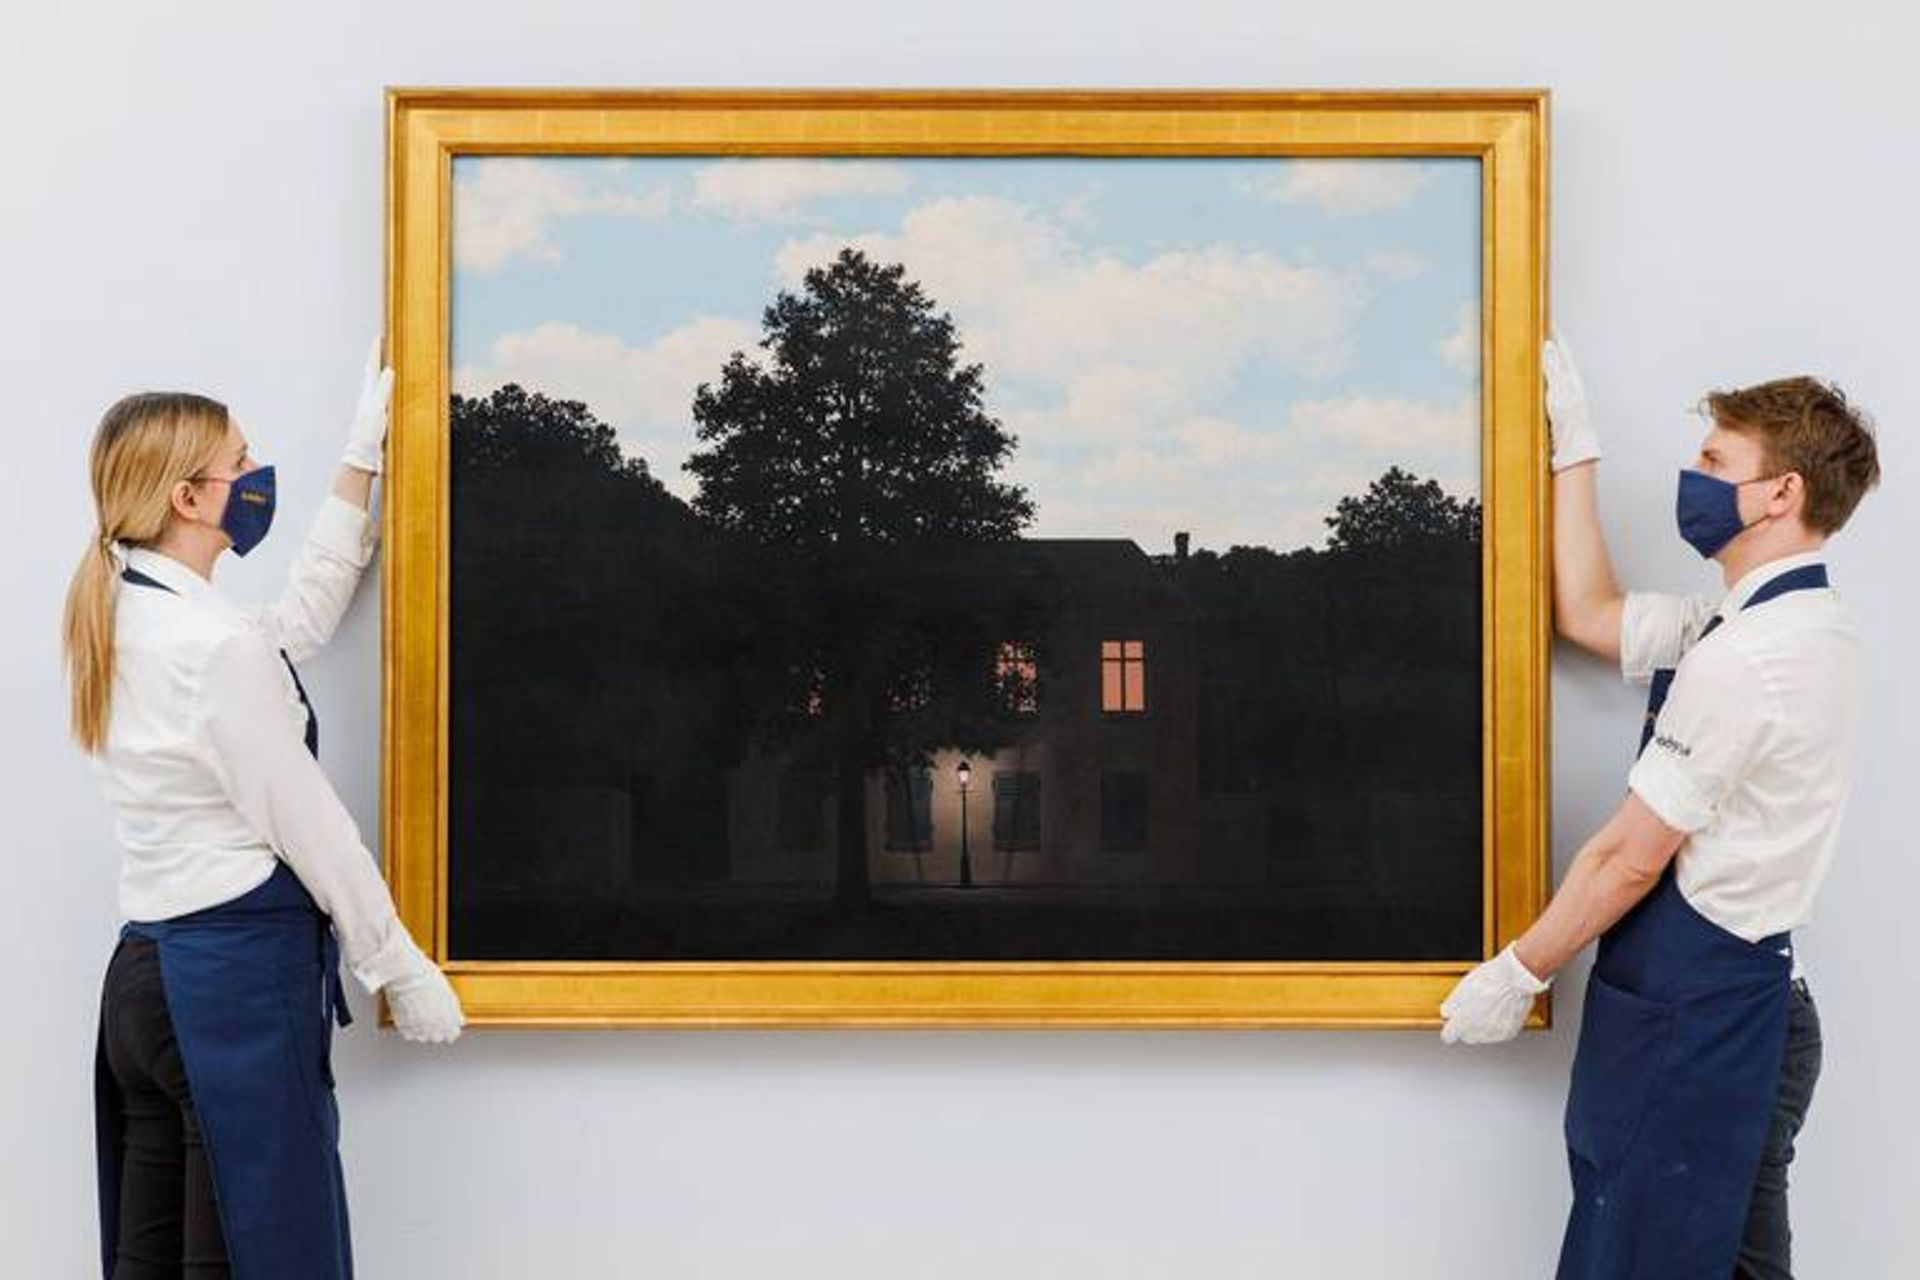 René Magritte, L’Empire des lumières, 1961. Courtesy Sotheby’s